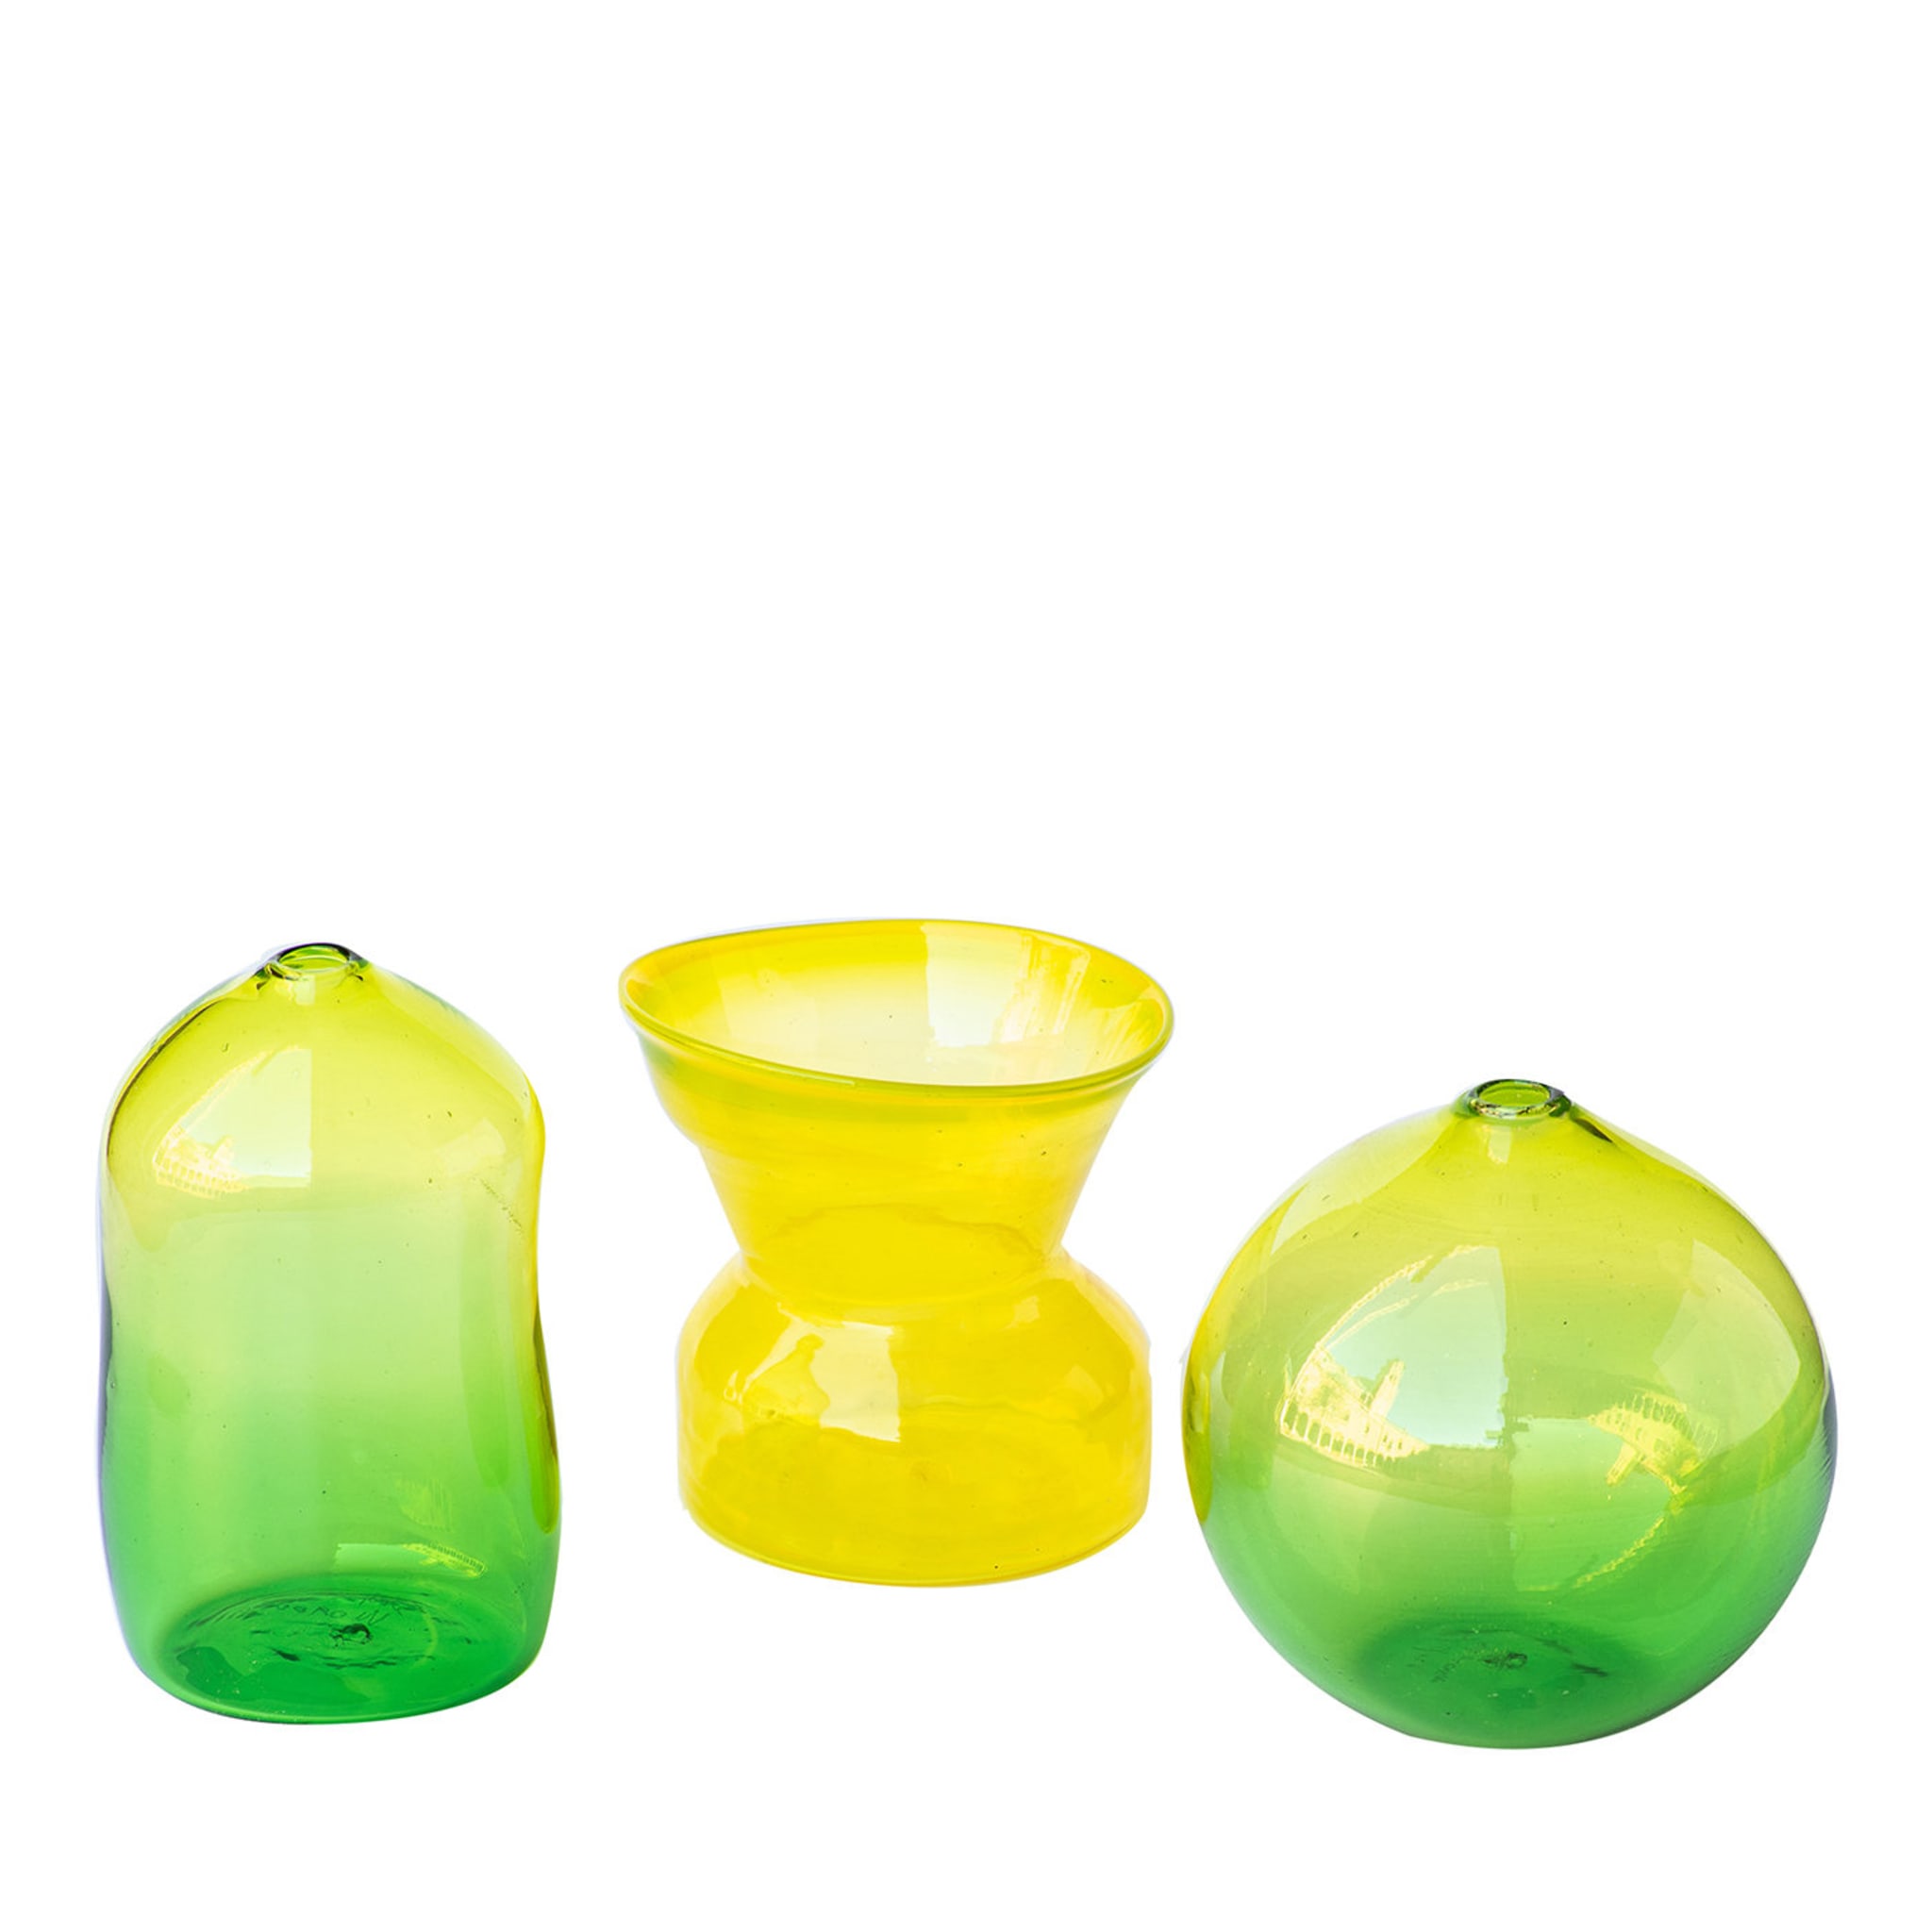 Ensemble de 3 petits vases jaune/vert #2 - Vue principale